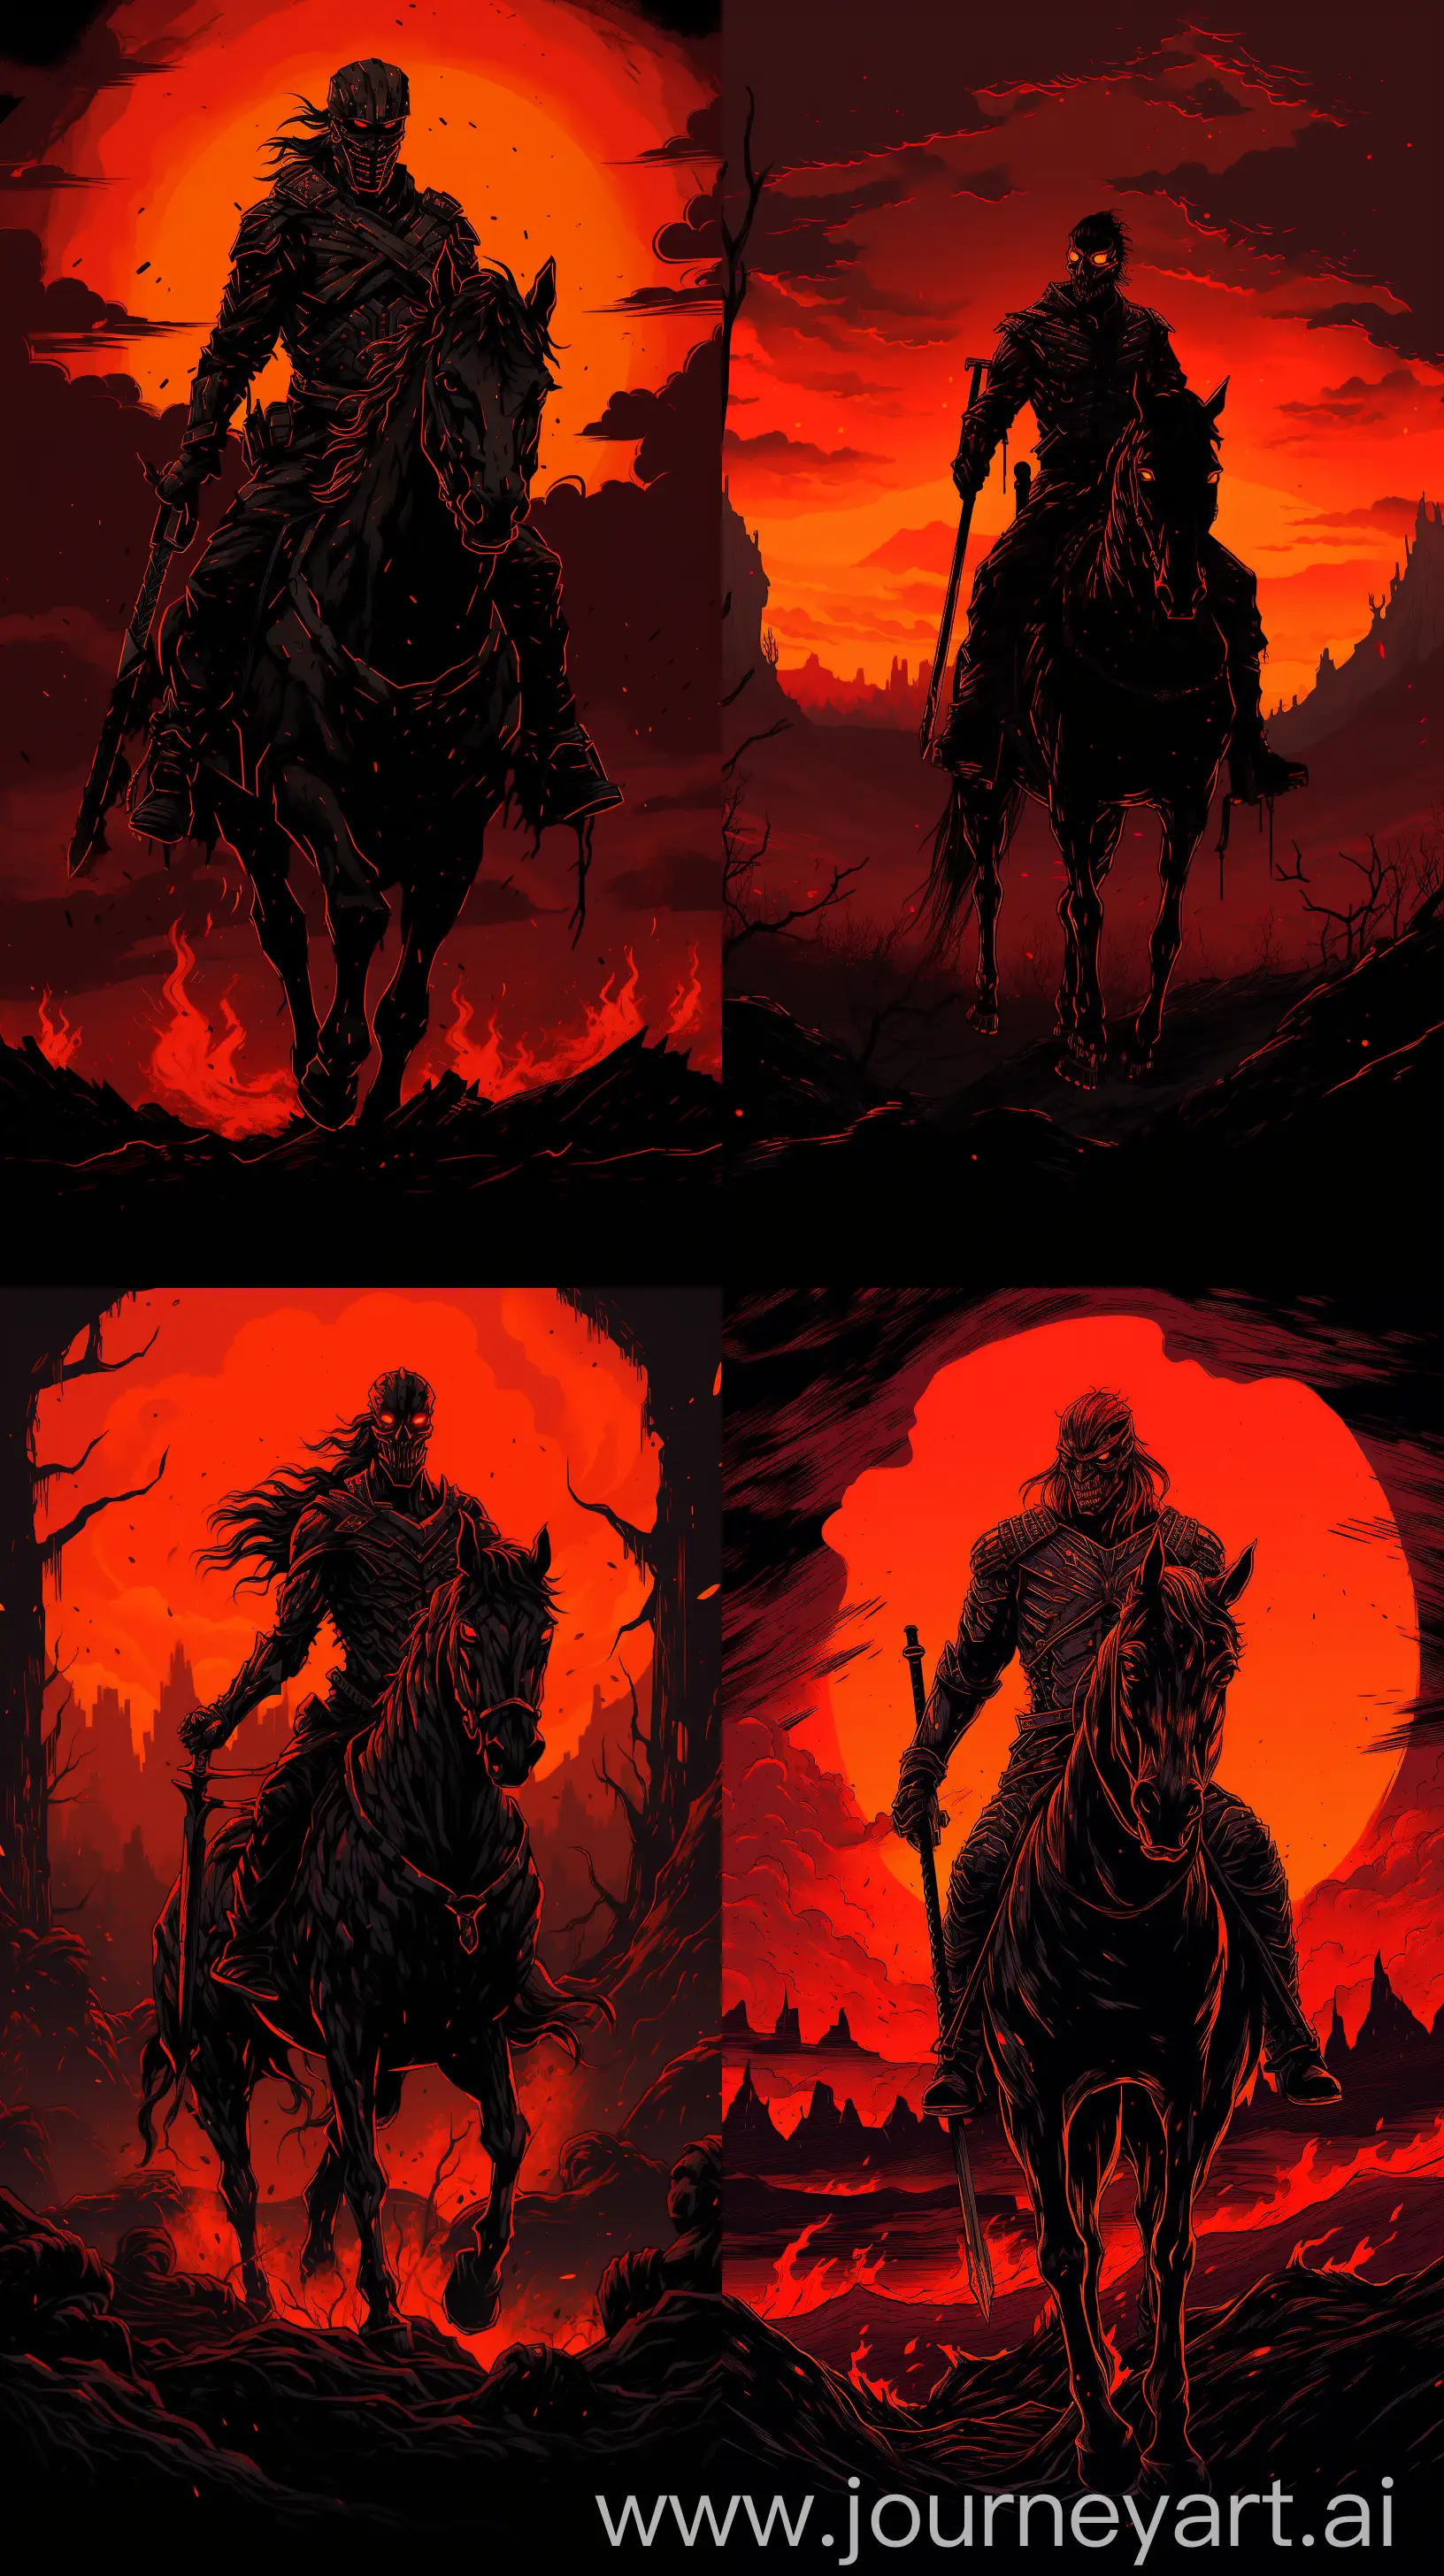 Reimagined-Four-Horsemen-of-Apocalypse-in-Mignolas-Aesthetic